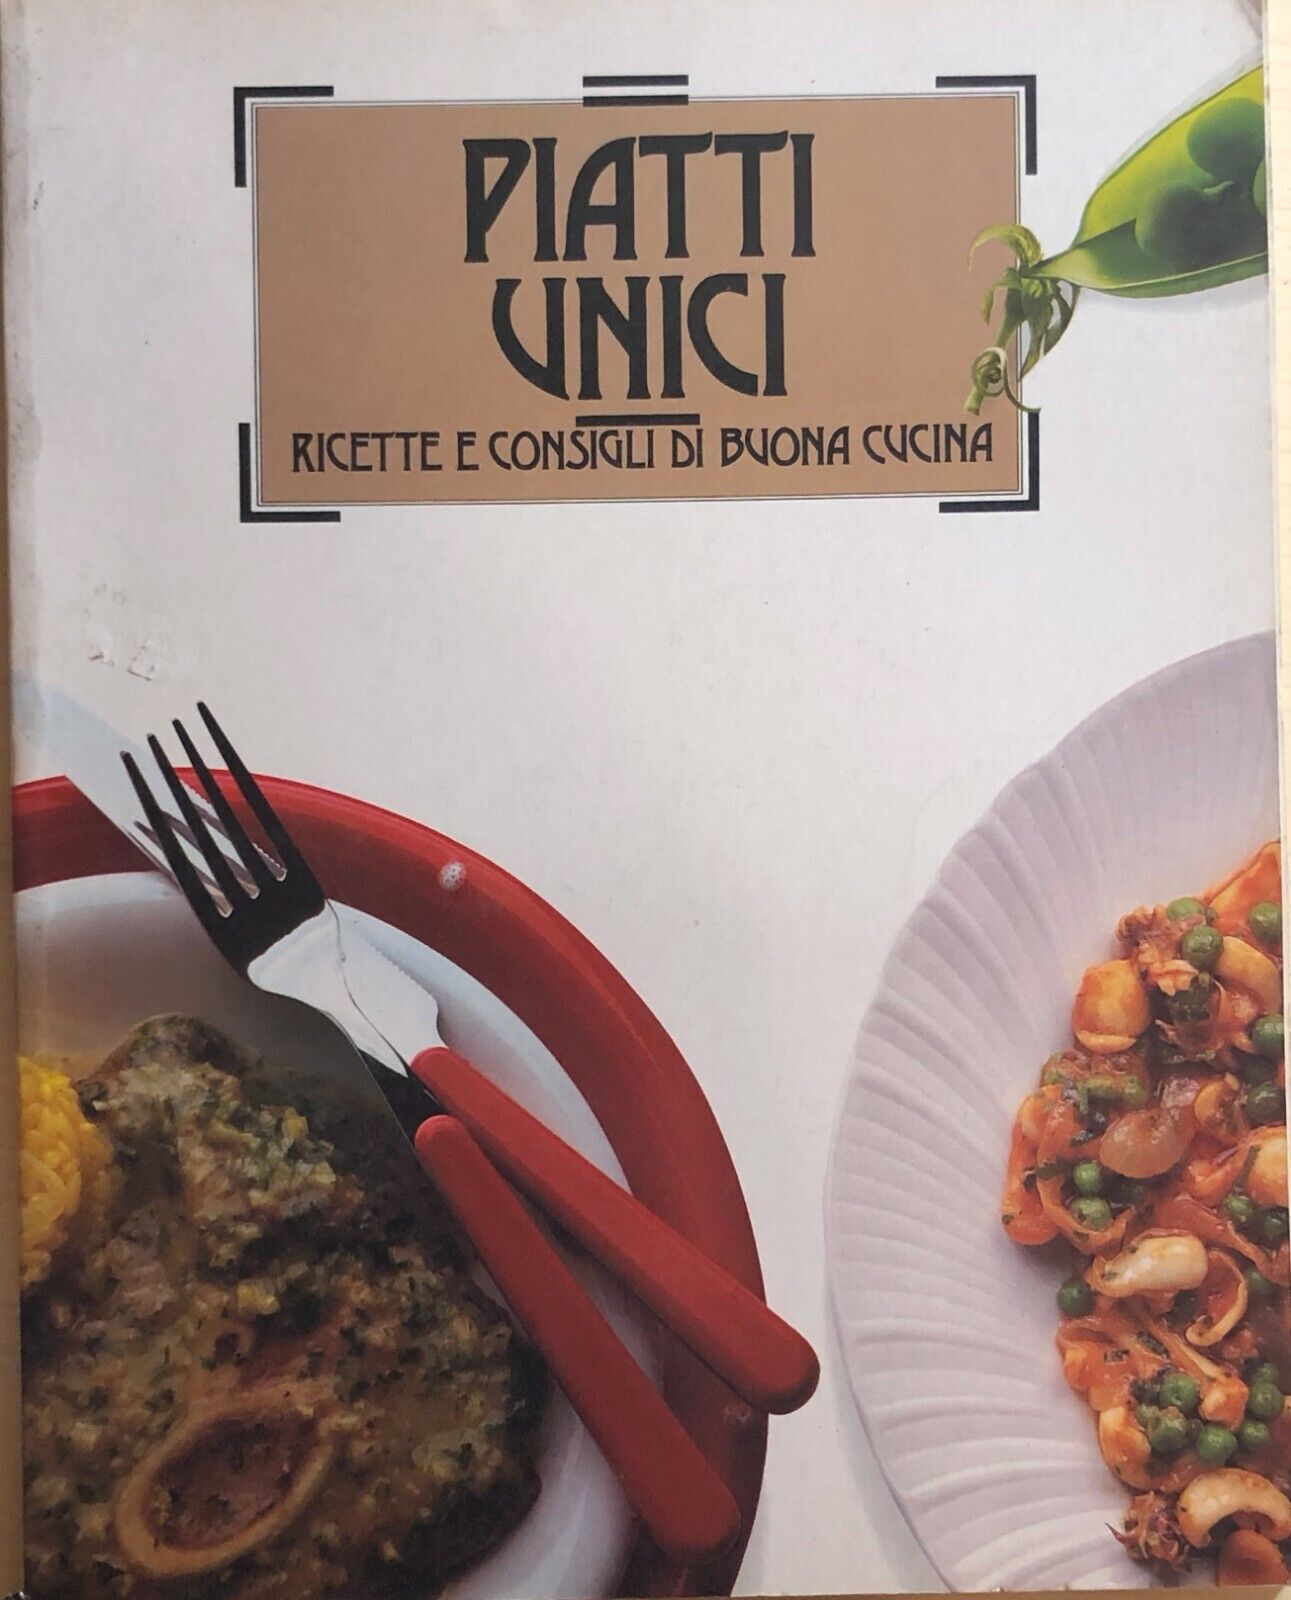 Piatti unici - Ricette e consigli di buona cucina di Aa.vv., 1988, Stock Libri I